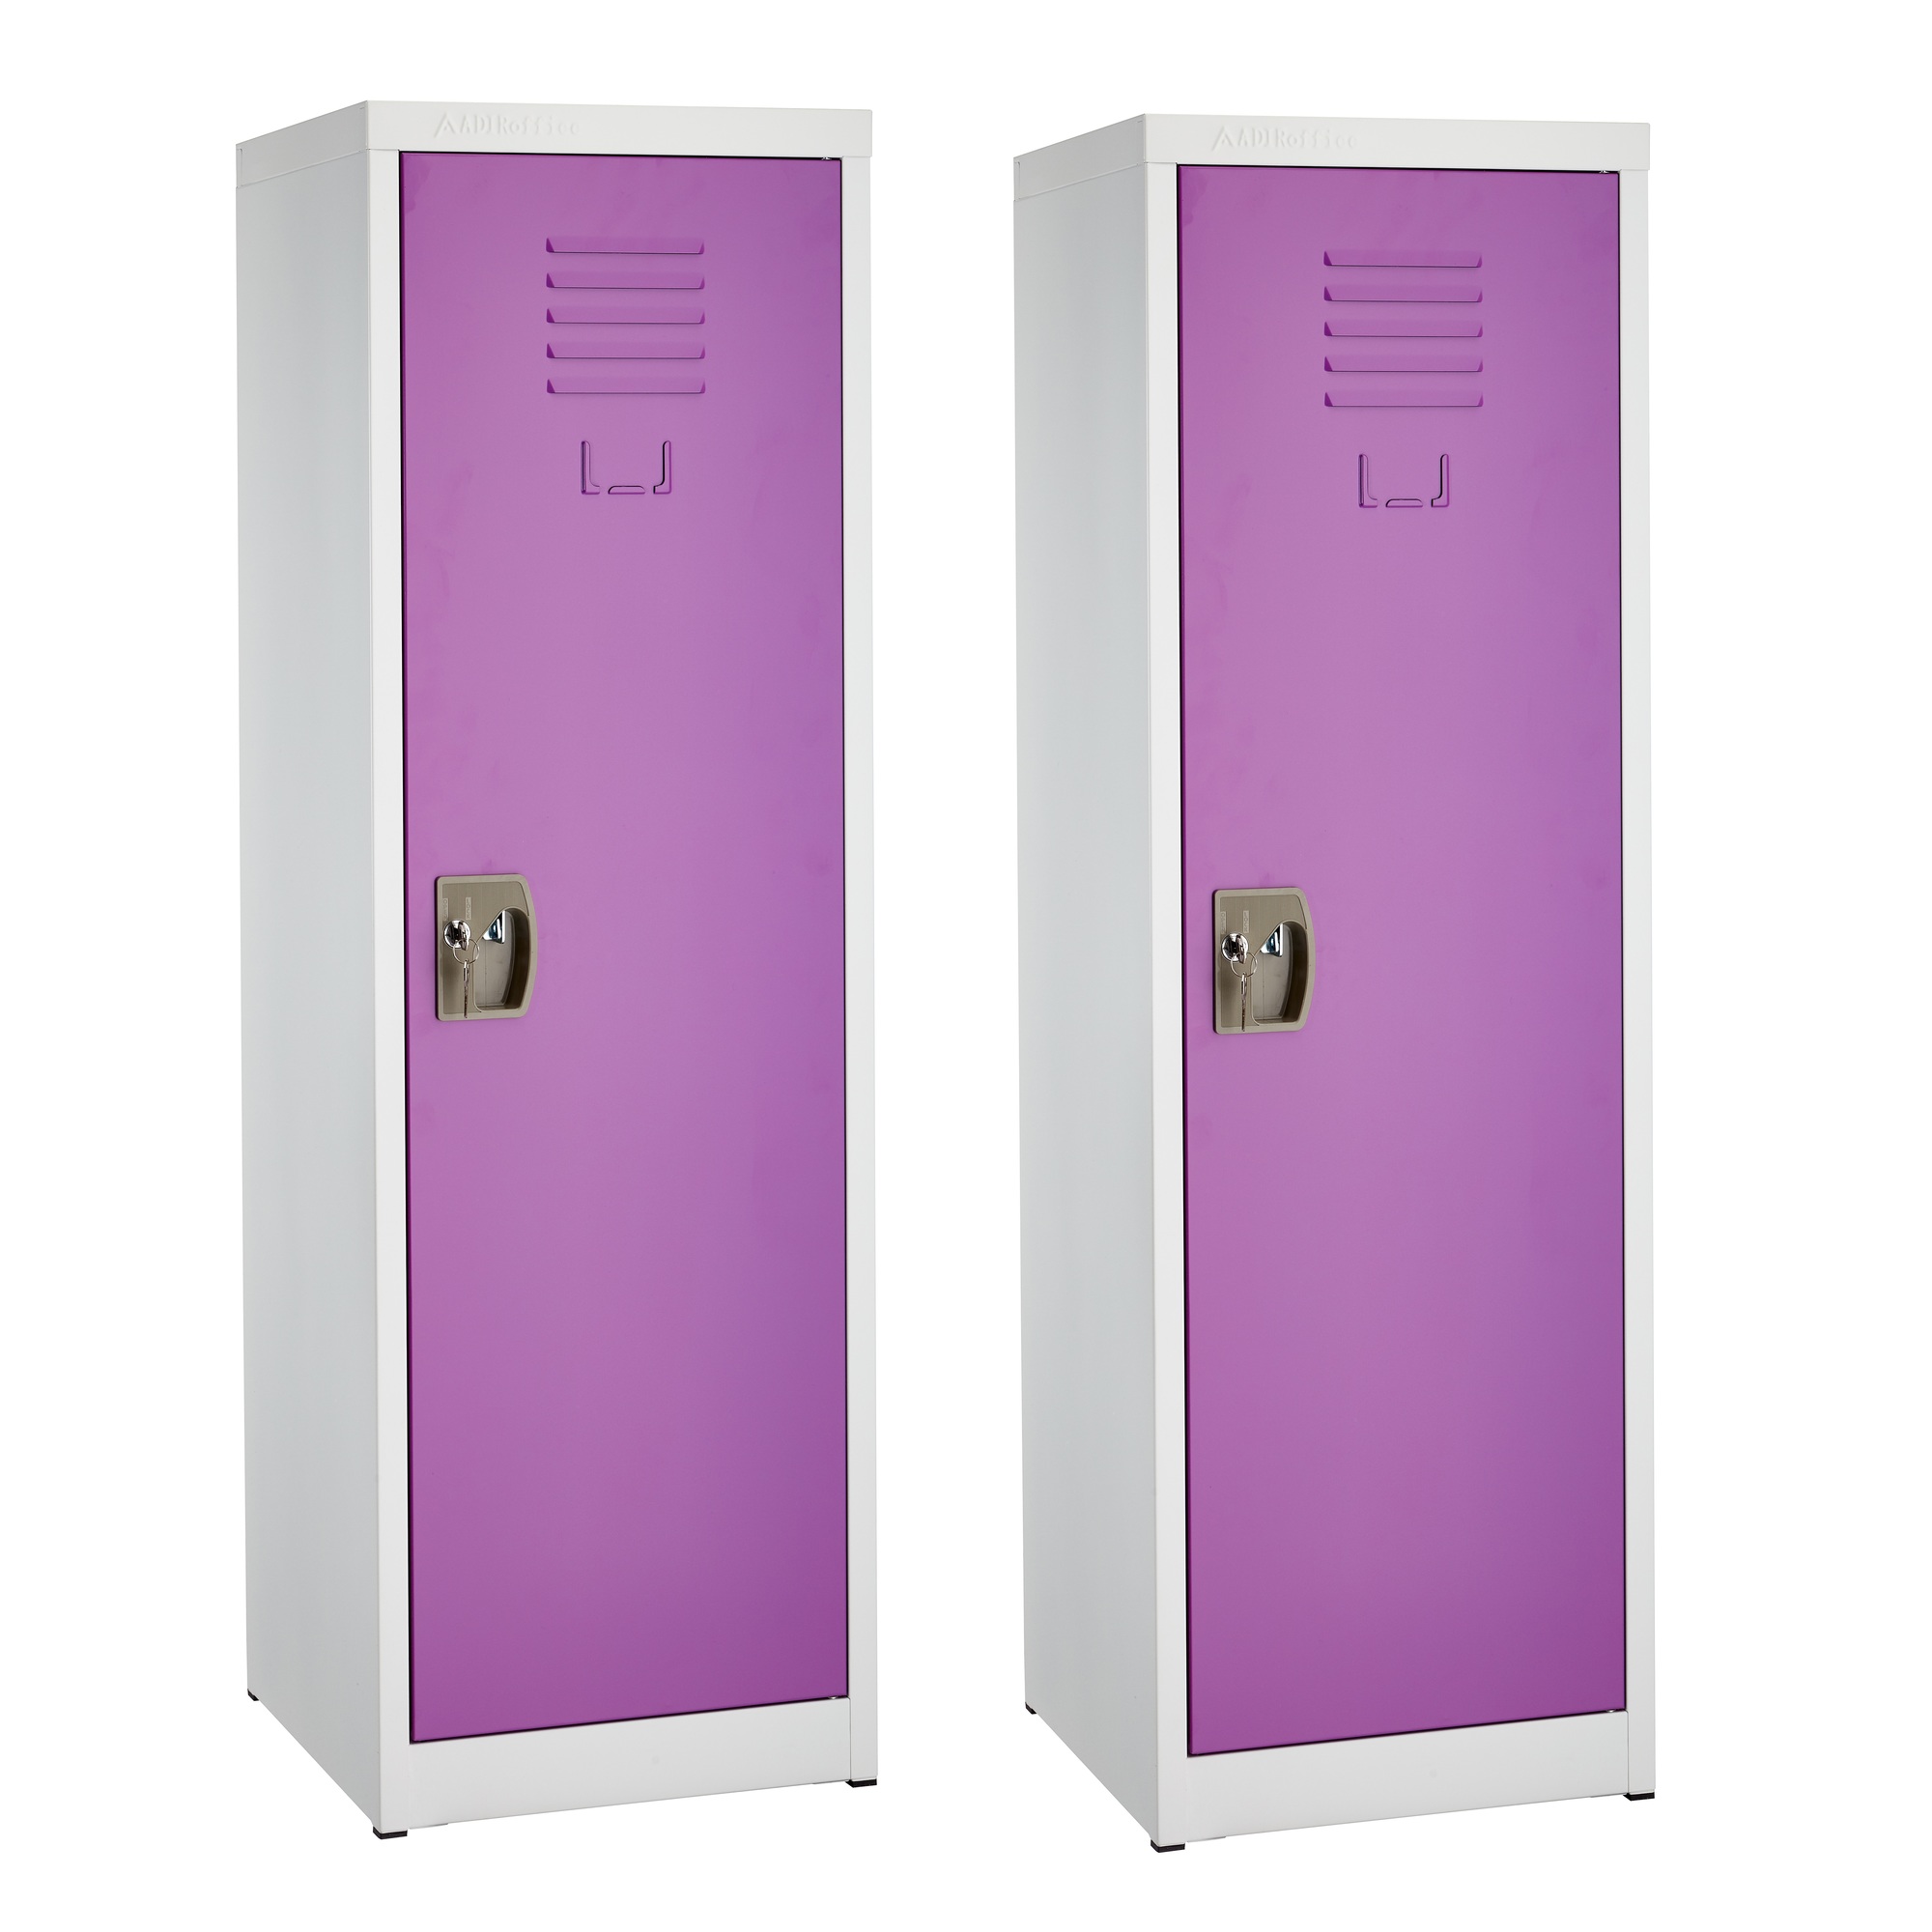 Alpine, 48ft.' Single Tier Locker for Kids â Purple, 2-Pack, Height 48 in, Width 15 in, Color Purple, Model ADI629-01-PUR-2PK